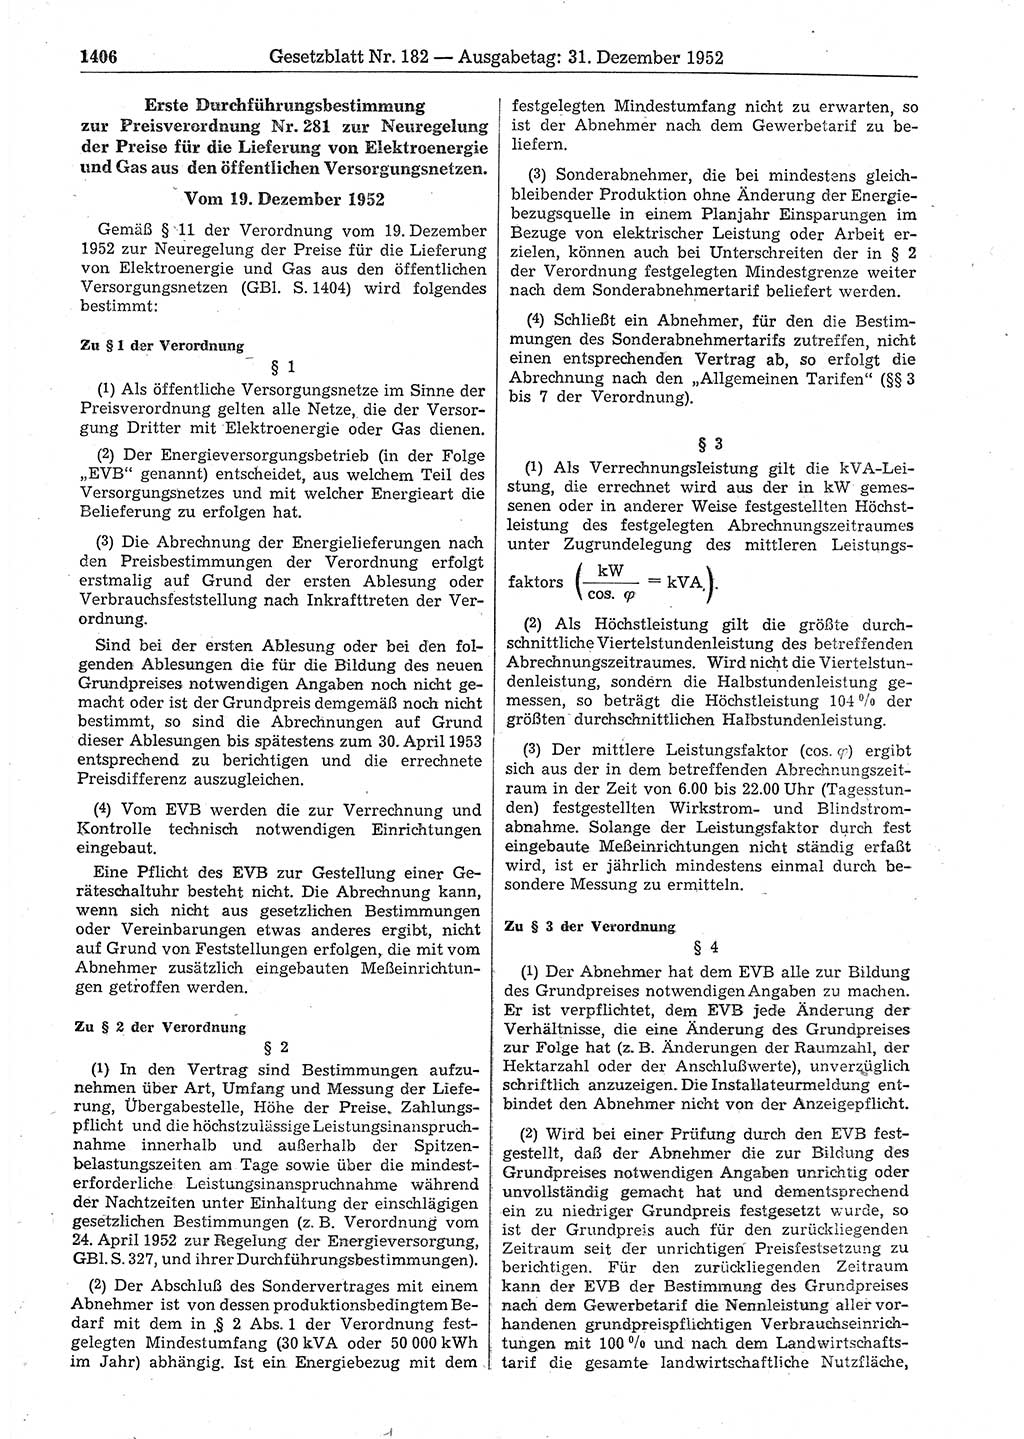 Gesetzblatt (GBl.) der Deutschen Demokratischen Republik (DDR) 1952, Seite 1406 (GBl. DDR 1952, S. 1406)